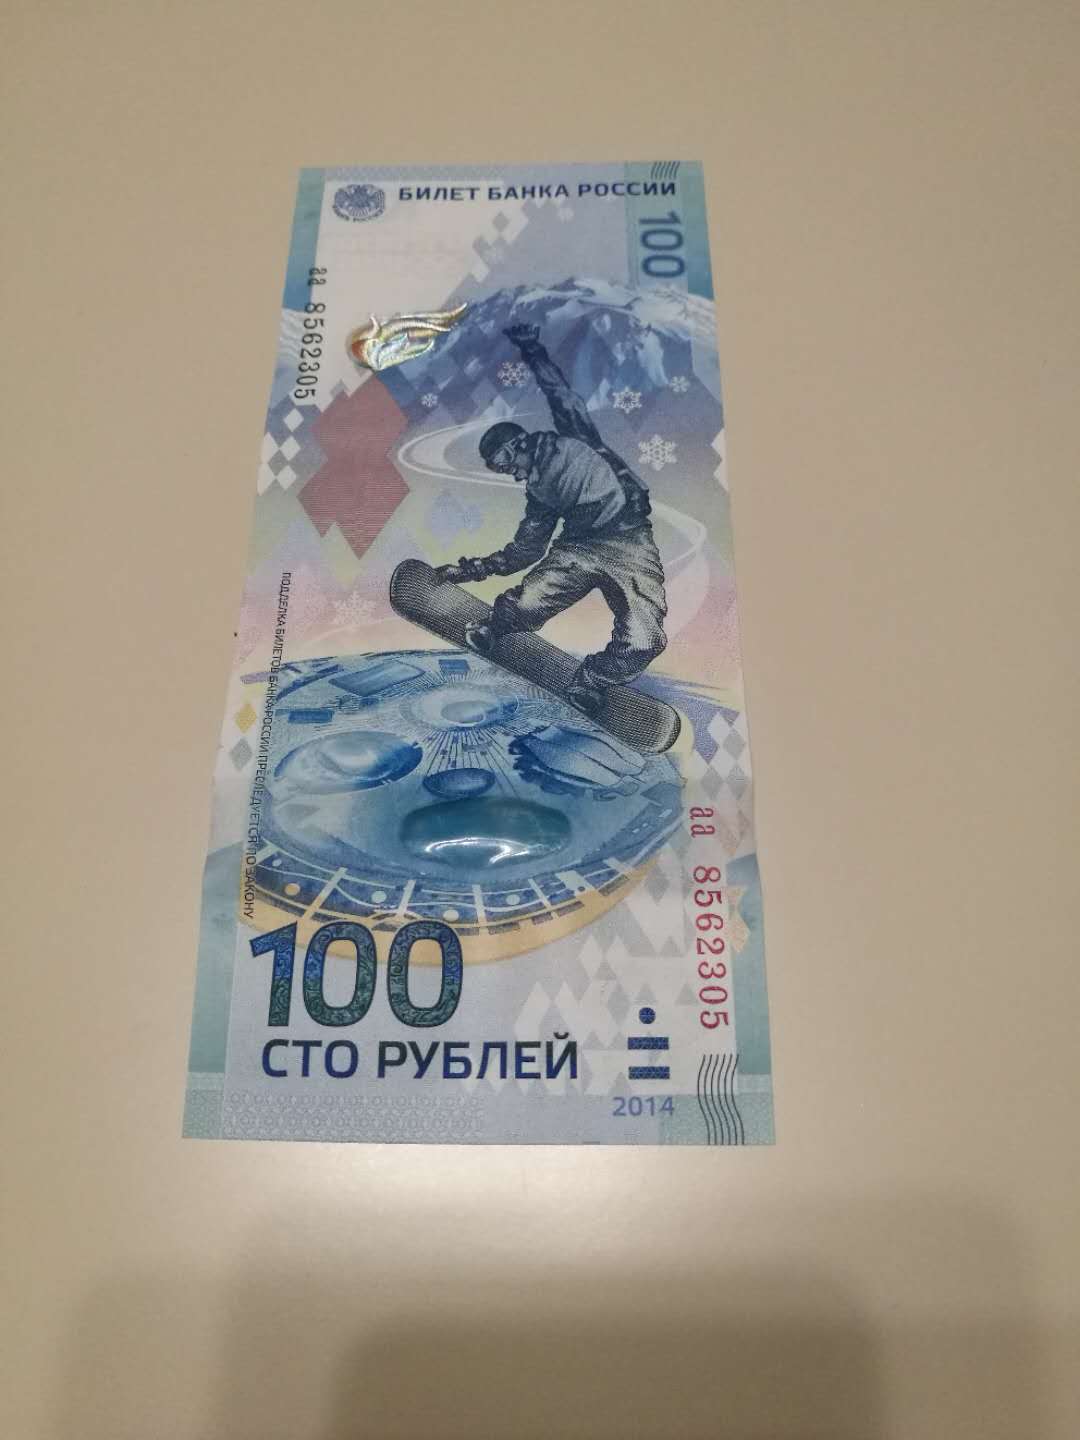 全新俄罗斯冬季奥运会纪念钞,我